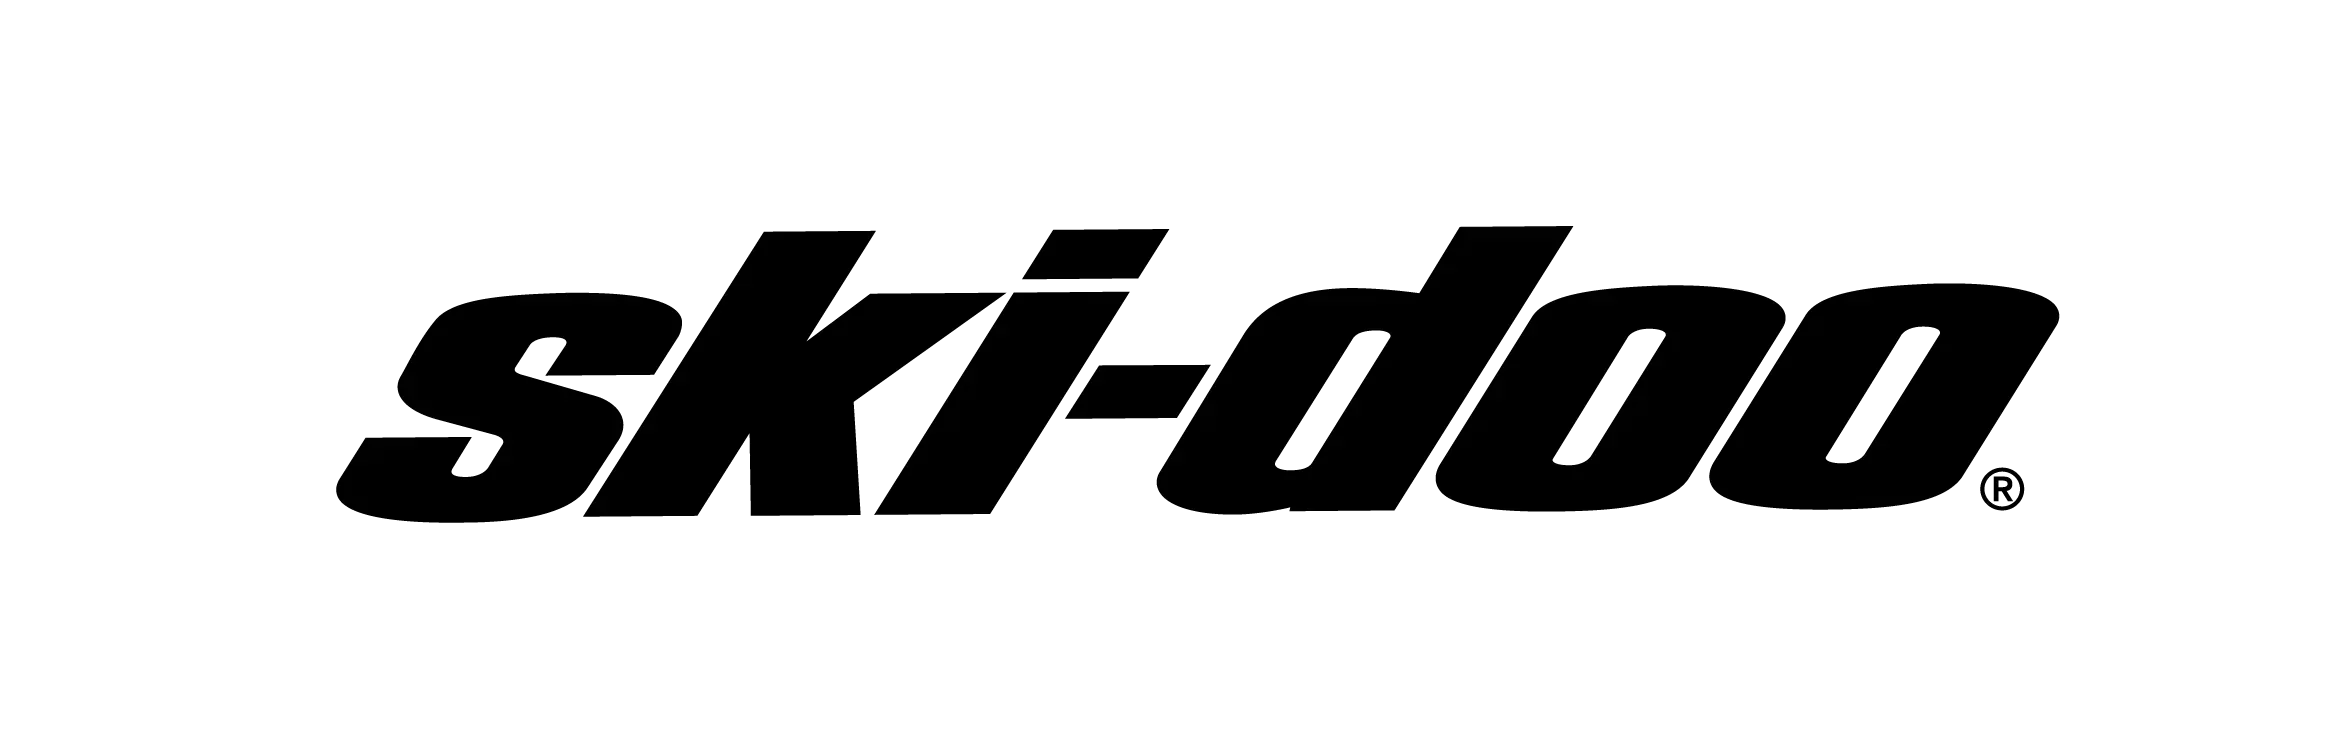 Logotyp för varumärket Ski-doo